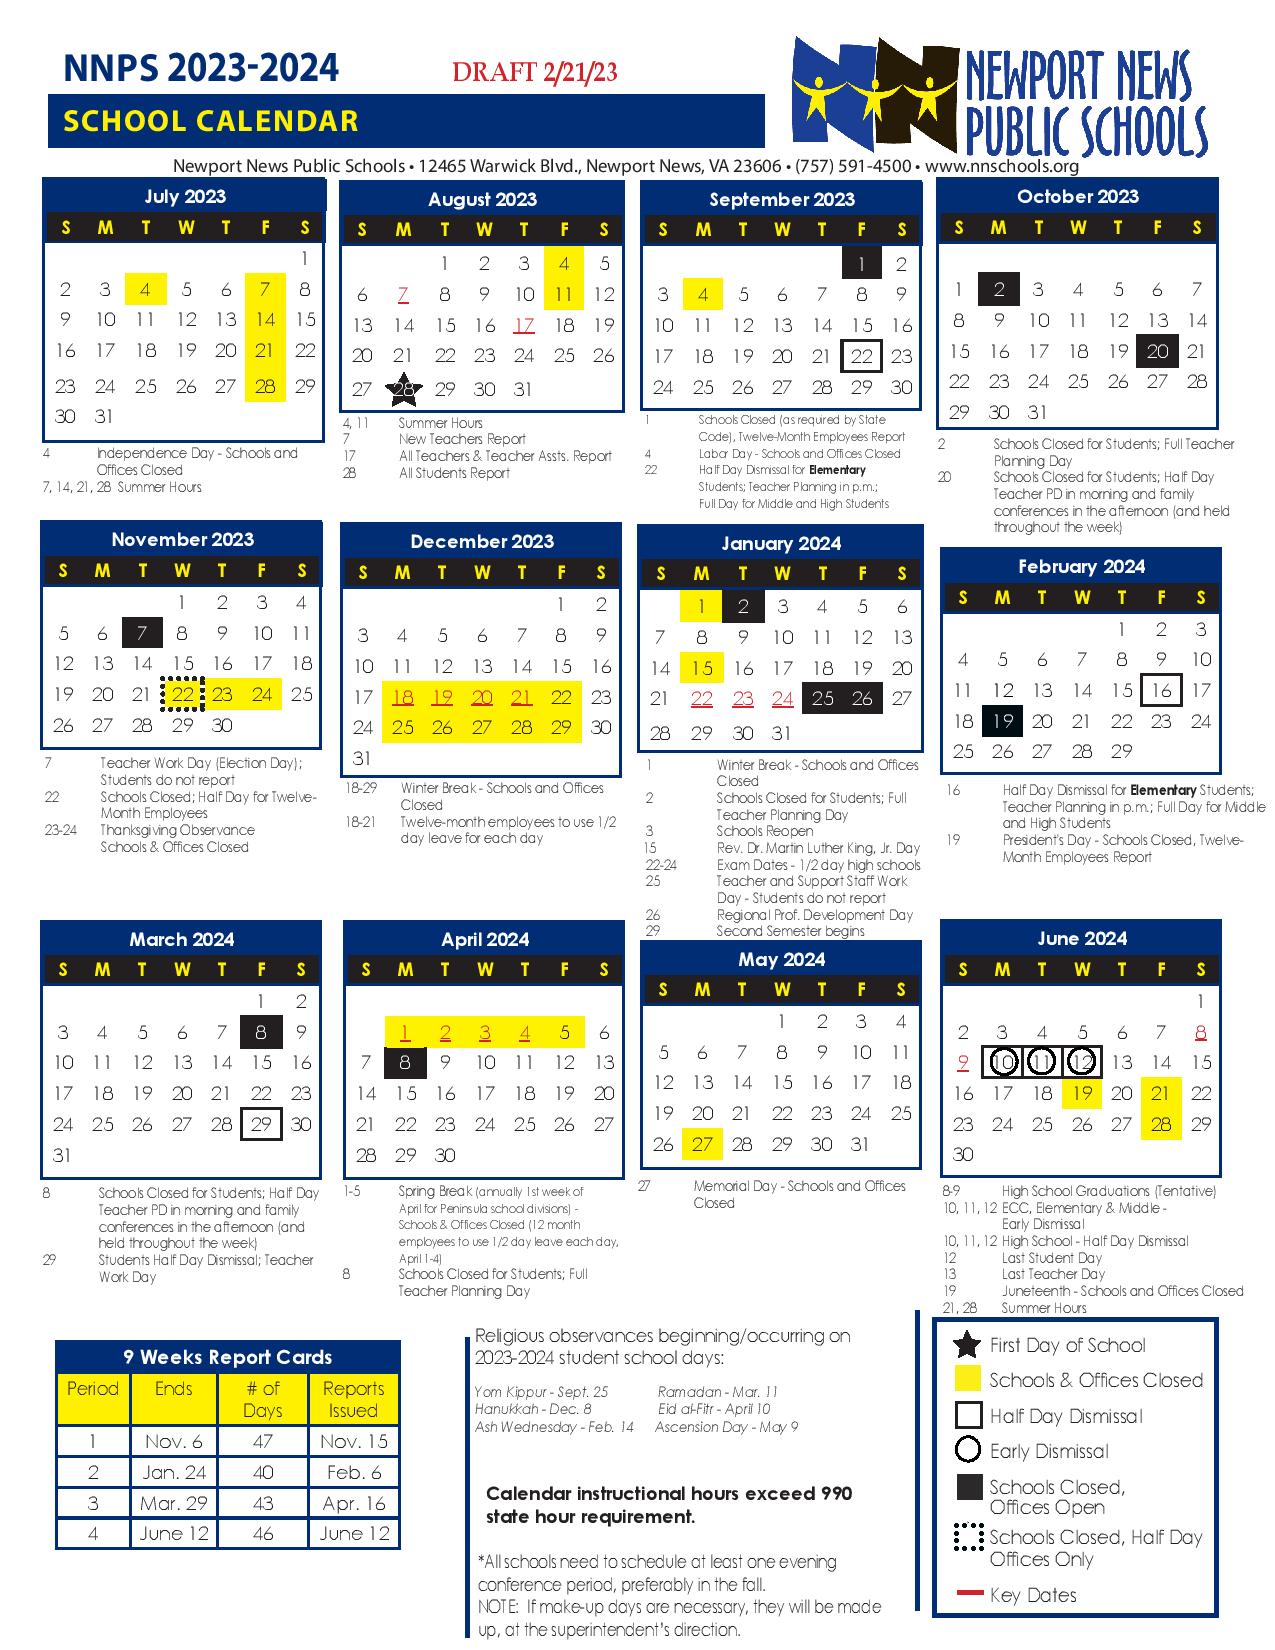 Newport News Public Schools Calendar 20232024 in PDF